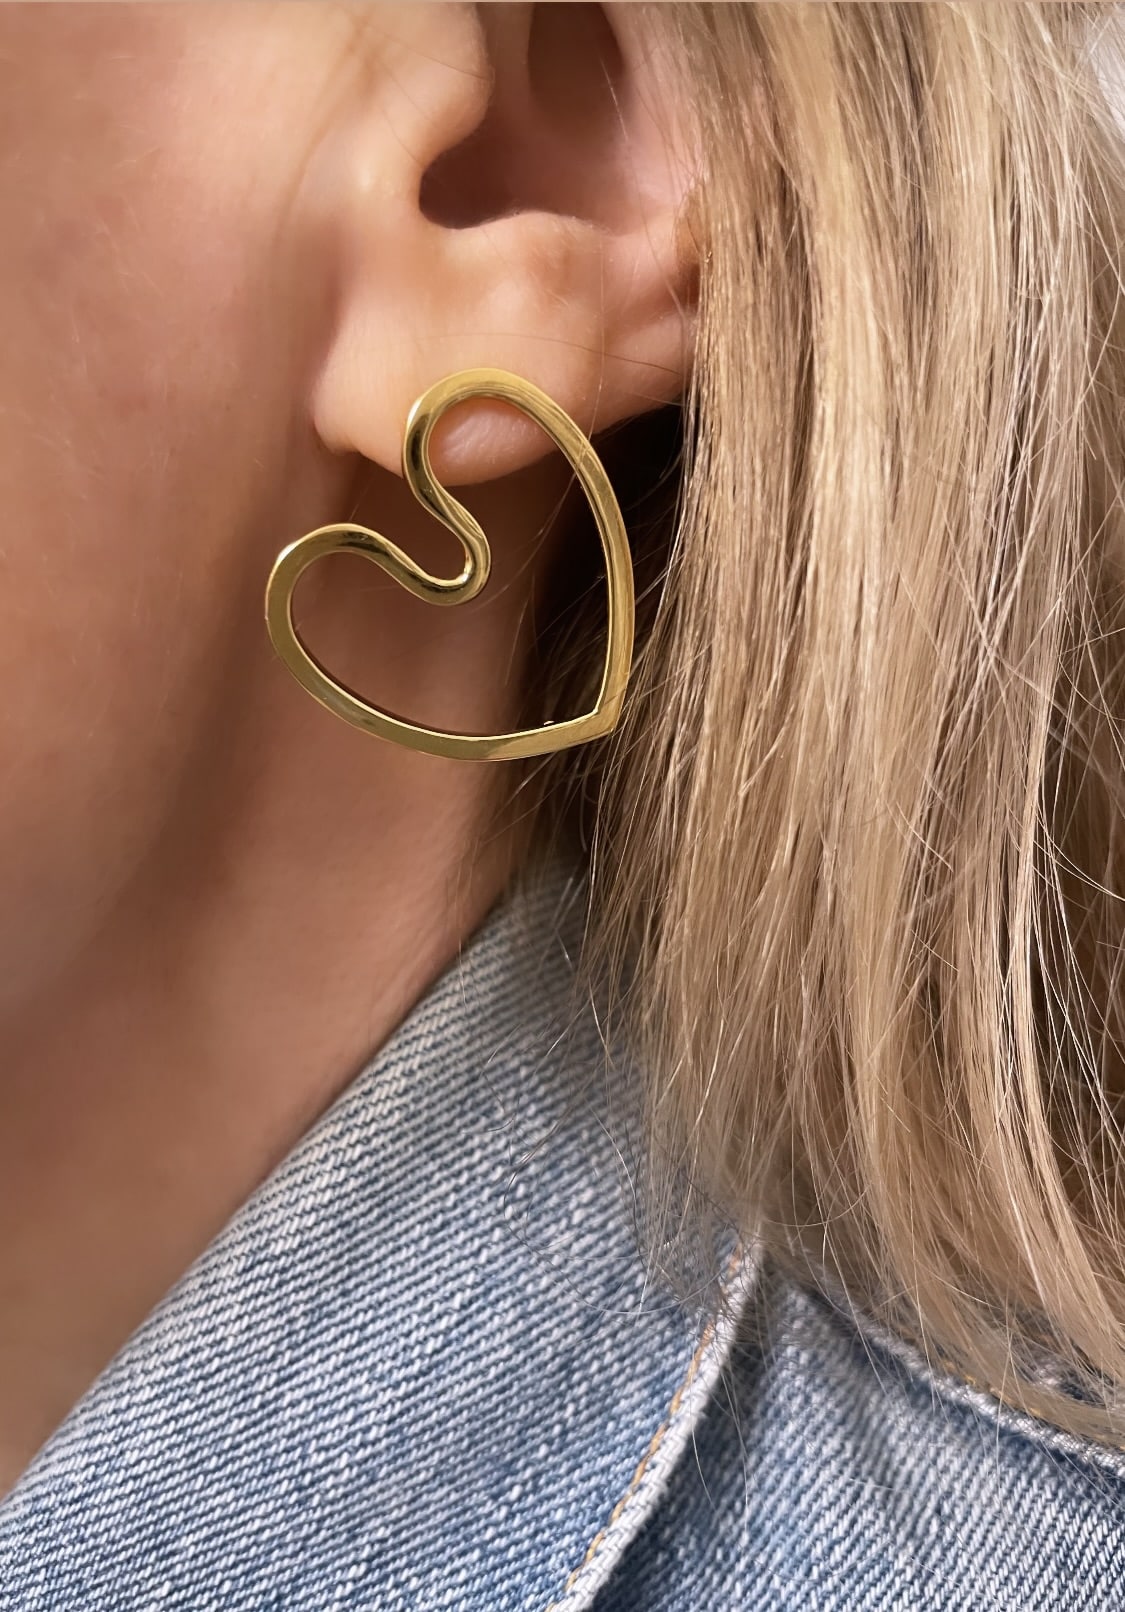 Boucles d'oreilles earrings size M COEUR AMOUREUX by Sande Paris.